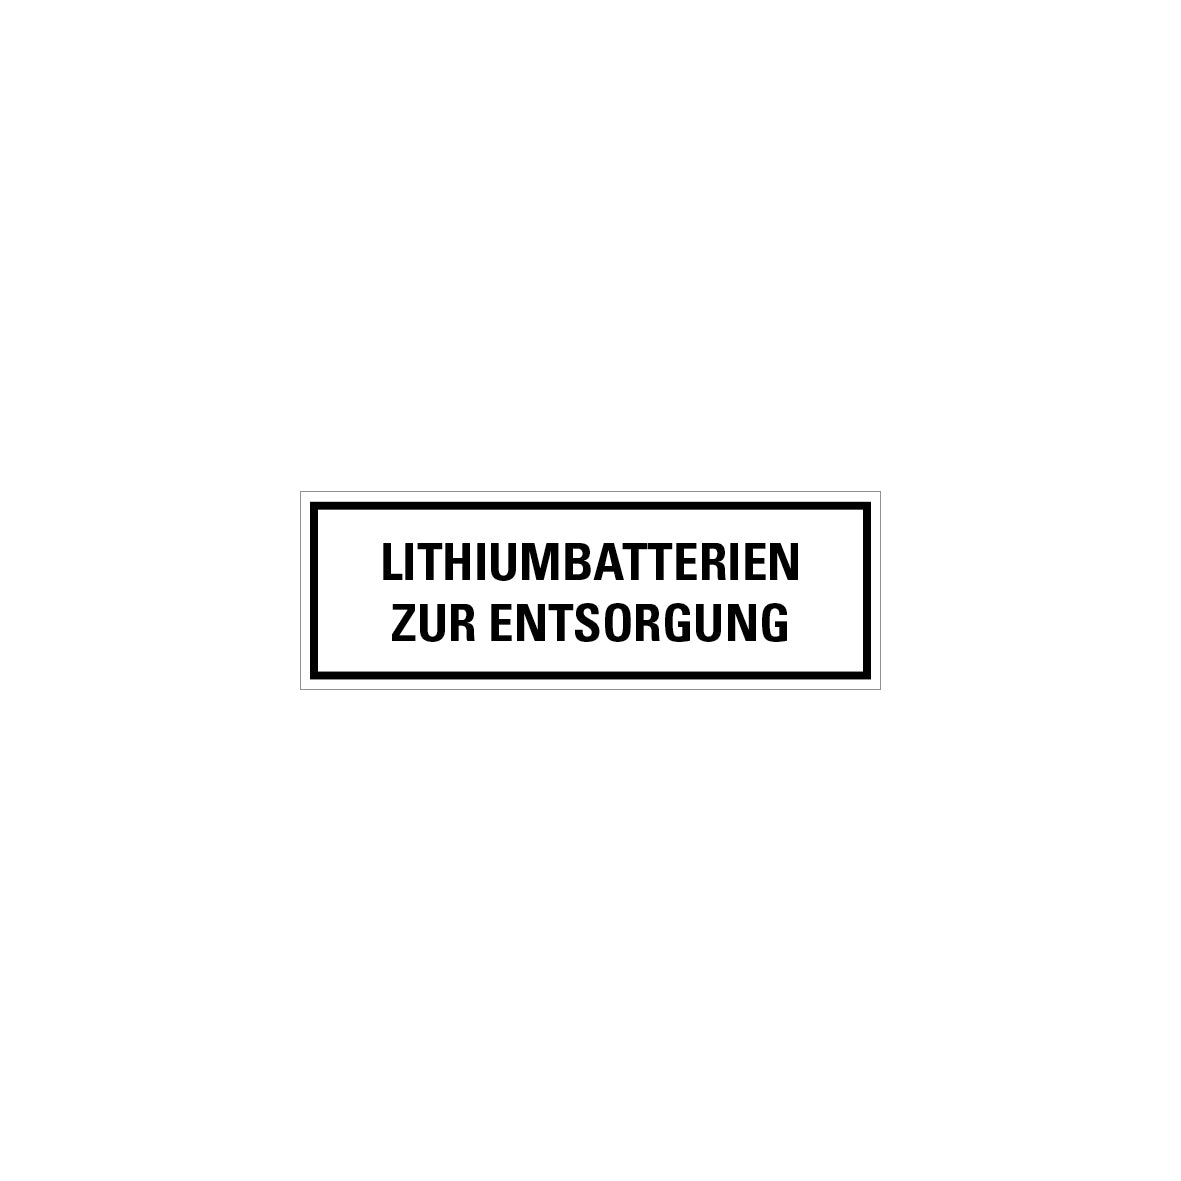 Gefahrstoff Batterien, Lithiumbatterien zur Entsorgung, 5.0411, 150 x 50 mm, Ro 500 Stk.